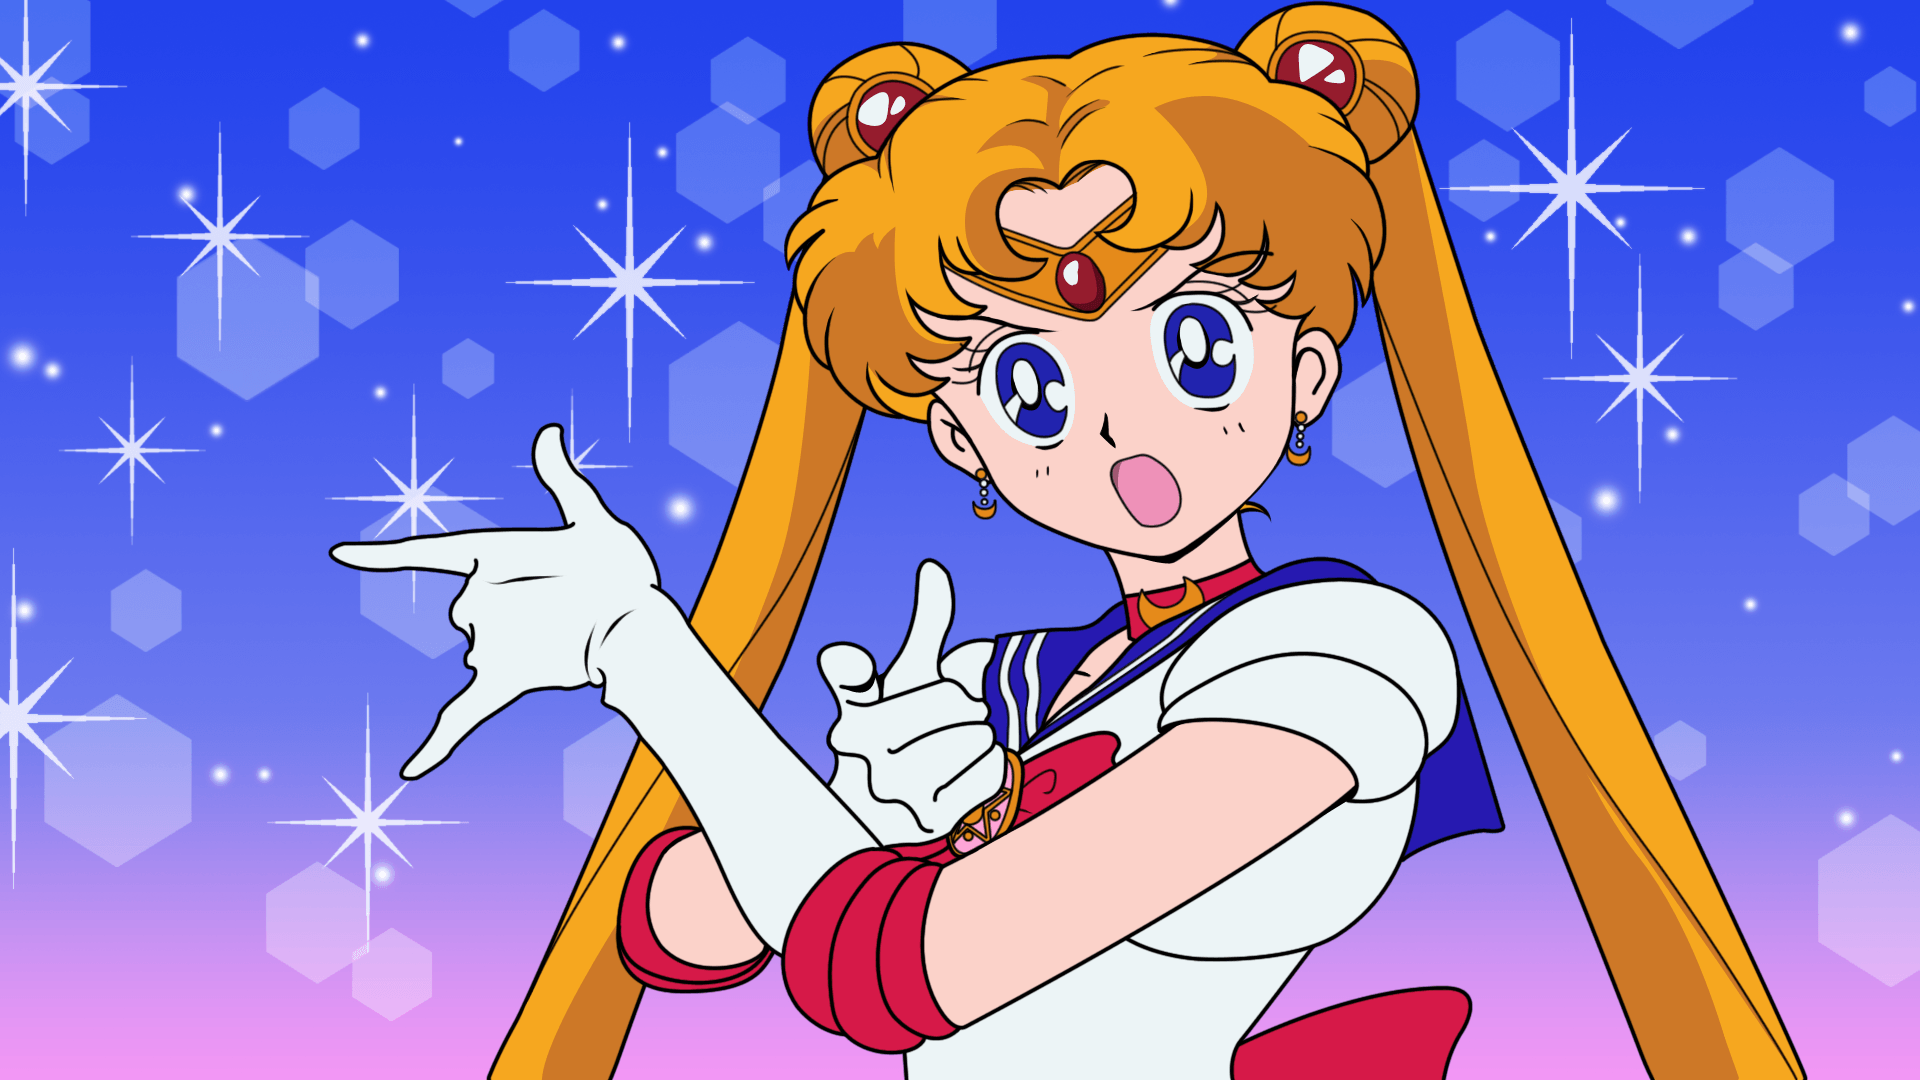 Sailor moon. Sailor moon character, Sailor moon